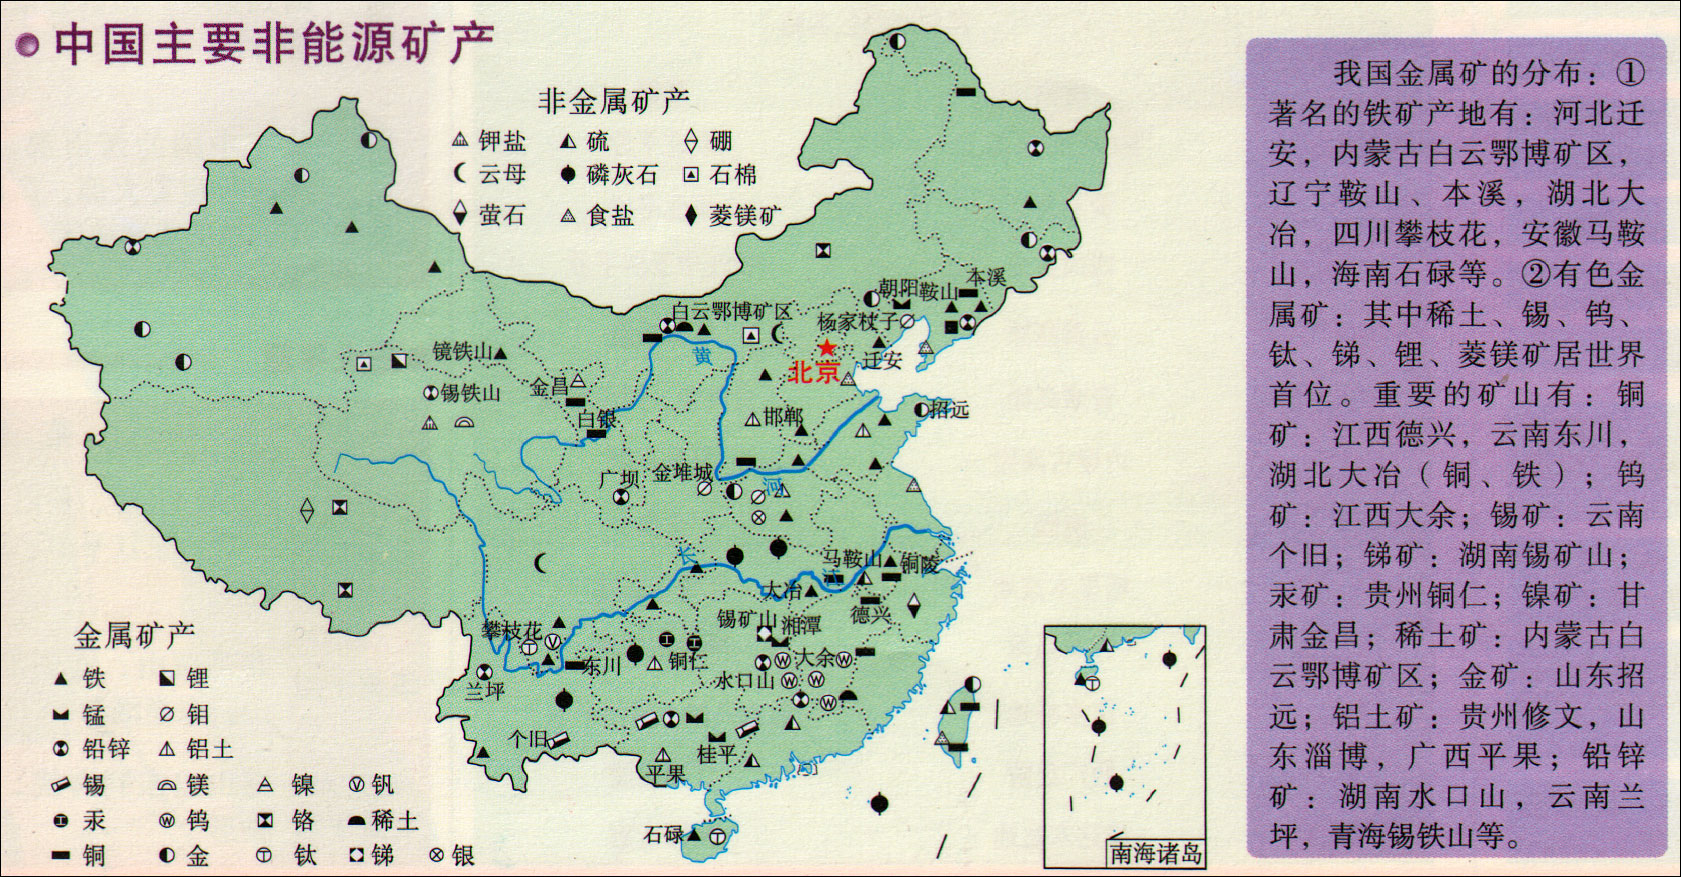 中国主要非能源矿产分布图